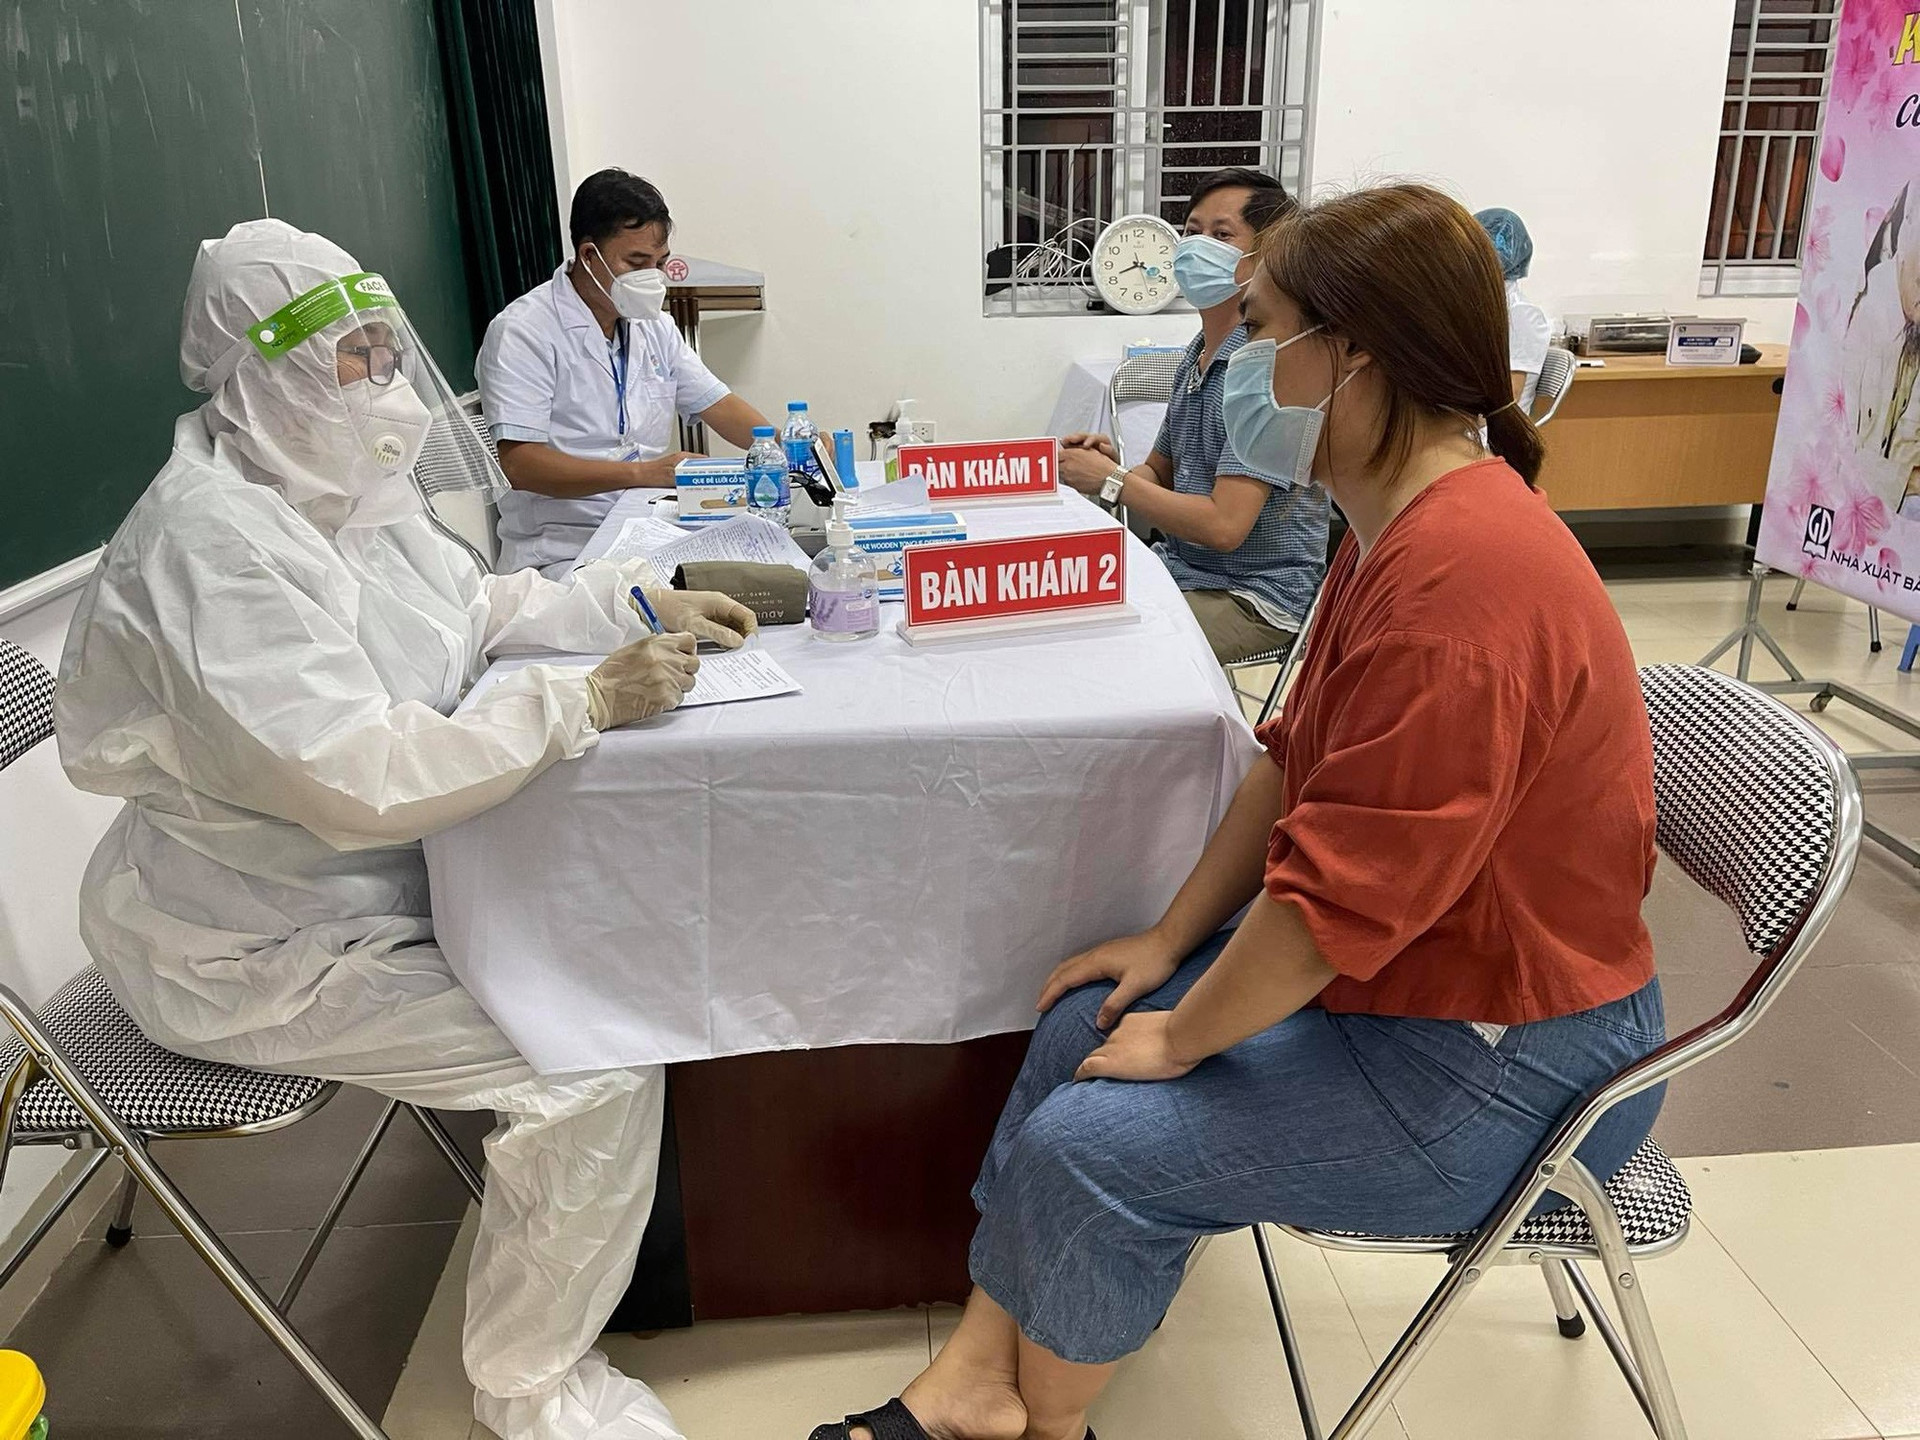 CDC Hà Nội: Ổ dịch phường Việt Hưng rất phức tạp, các F0 đi chợ, đi tiêm vaccine, tiếp xúc nhiều người  - Ảnh 2.